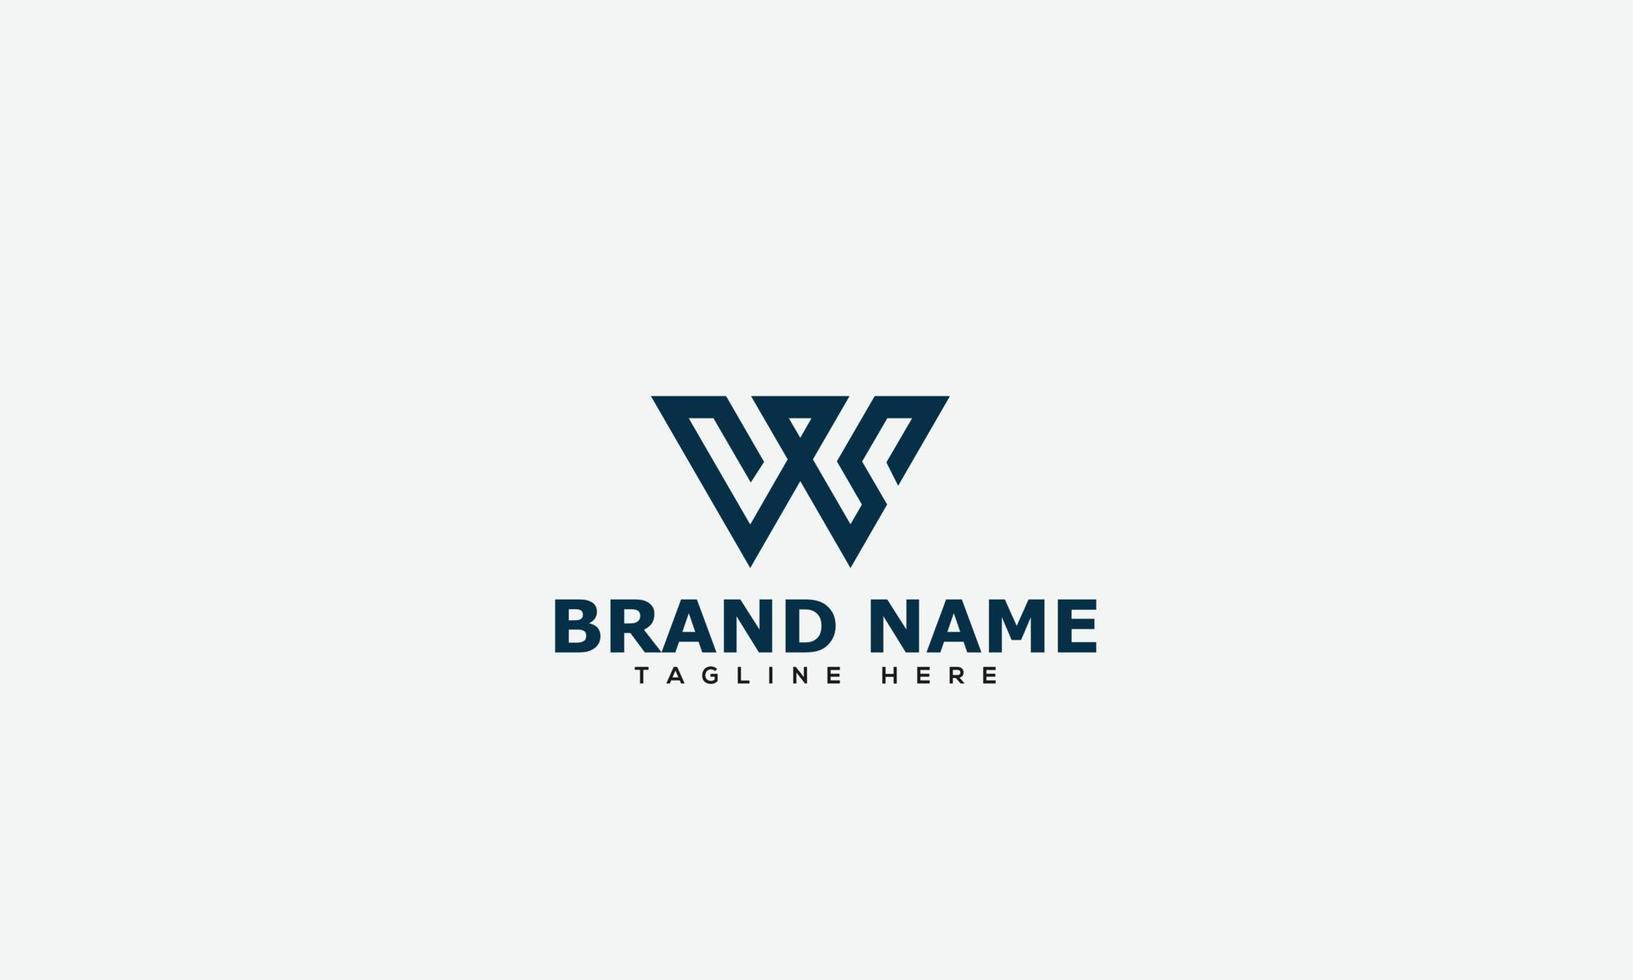 ws logotyp design mall vektor grafisk branding element.